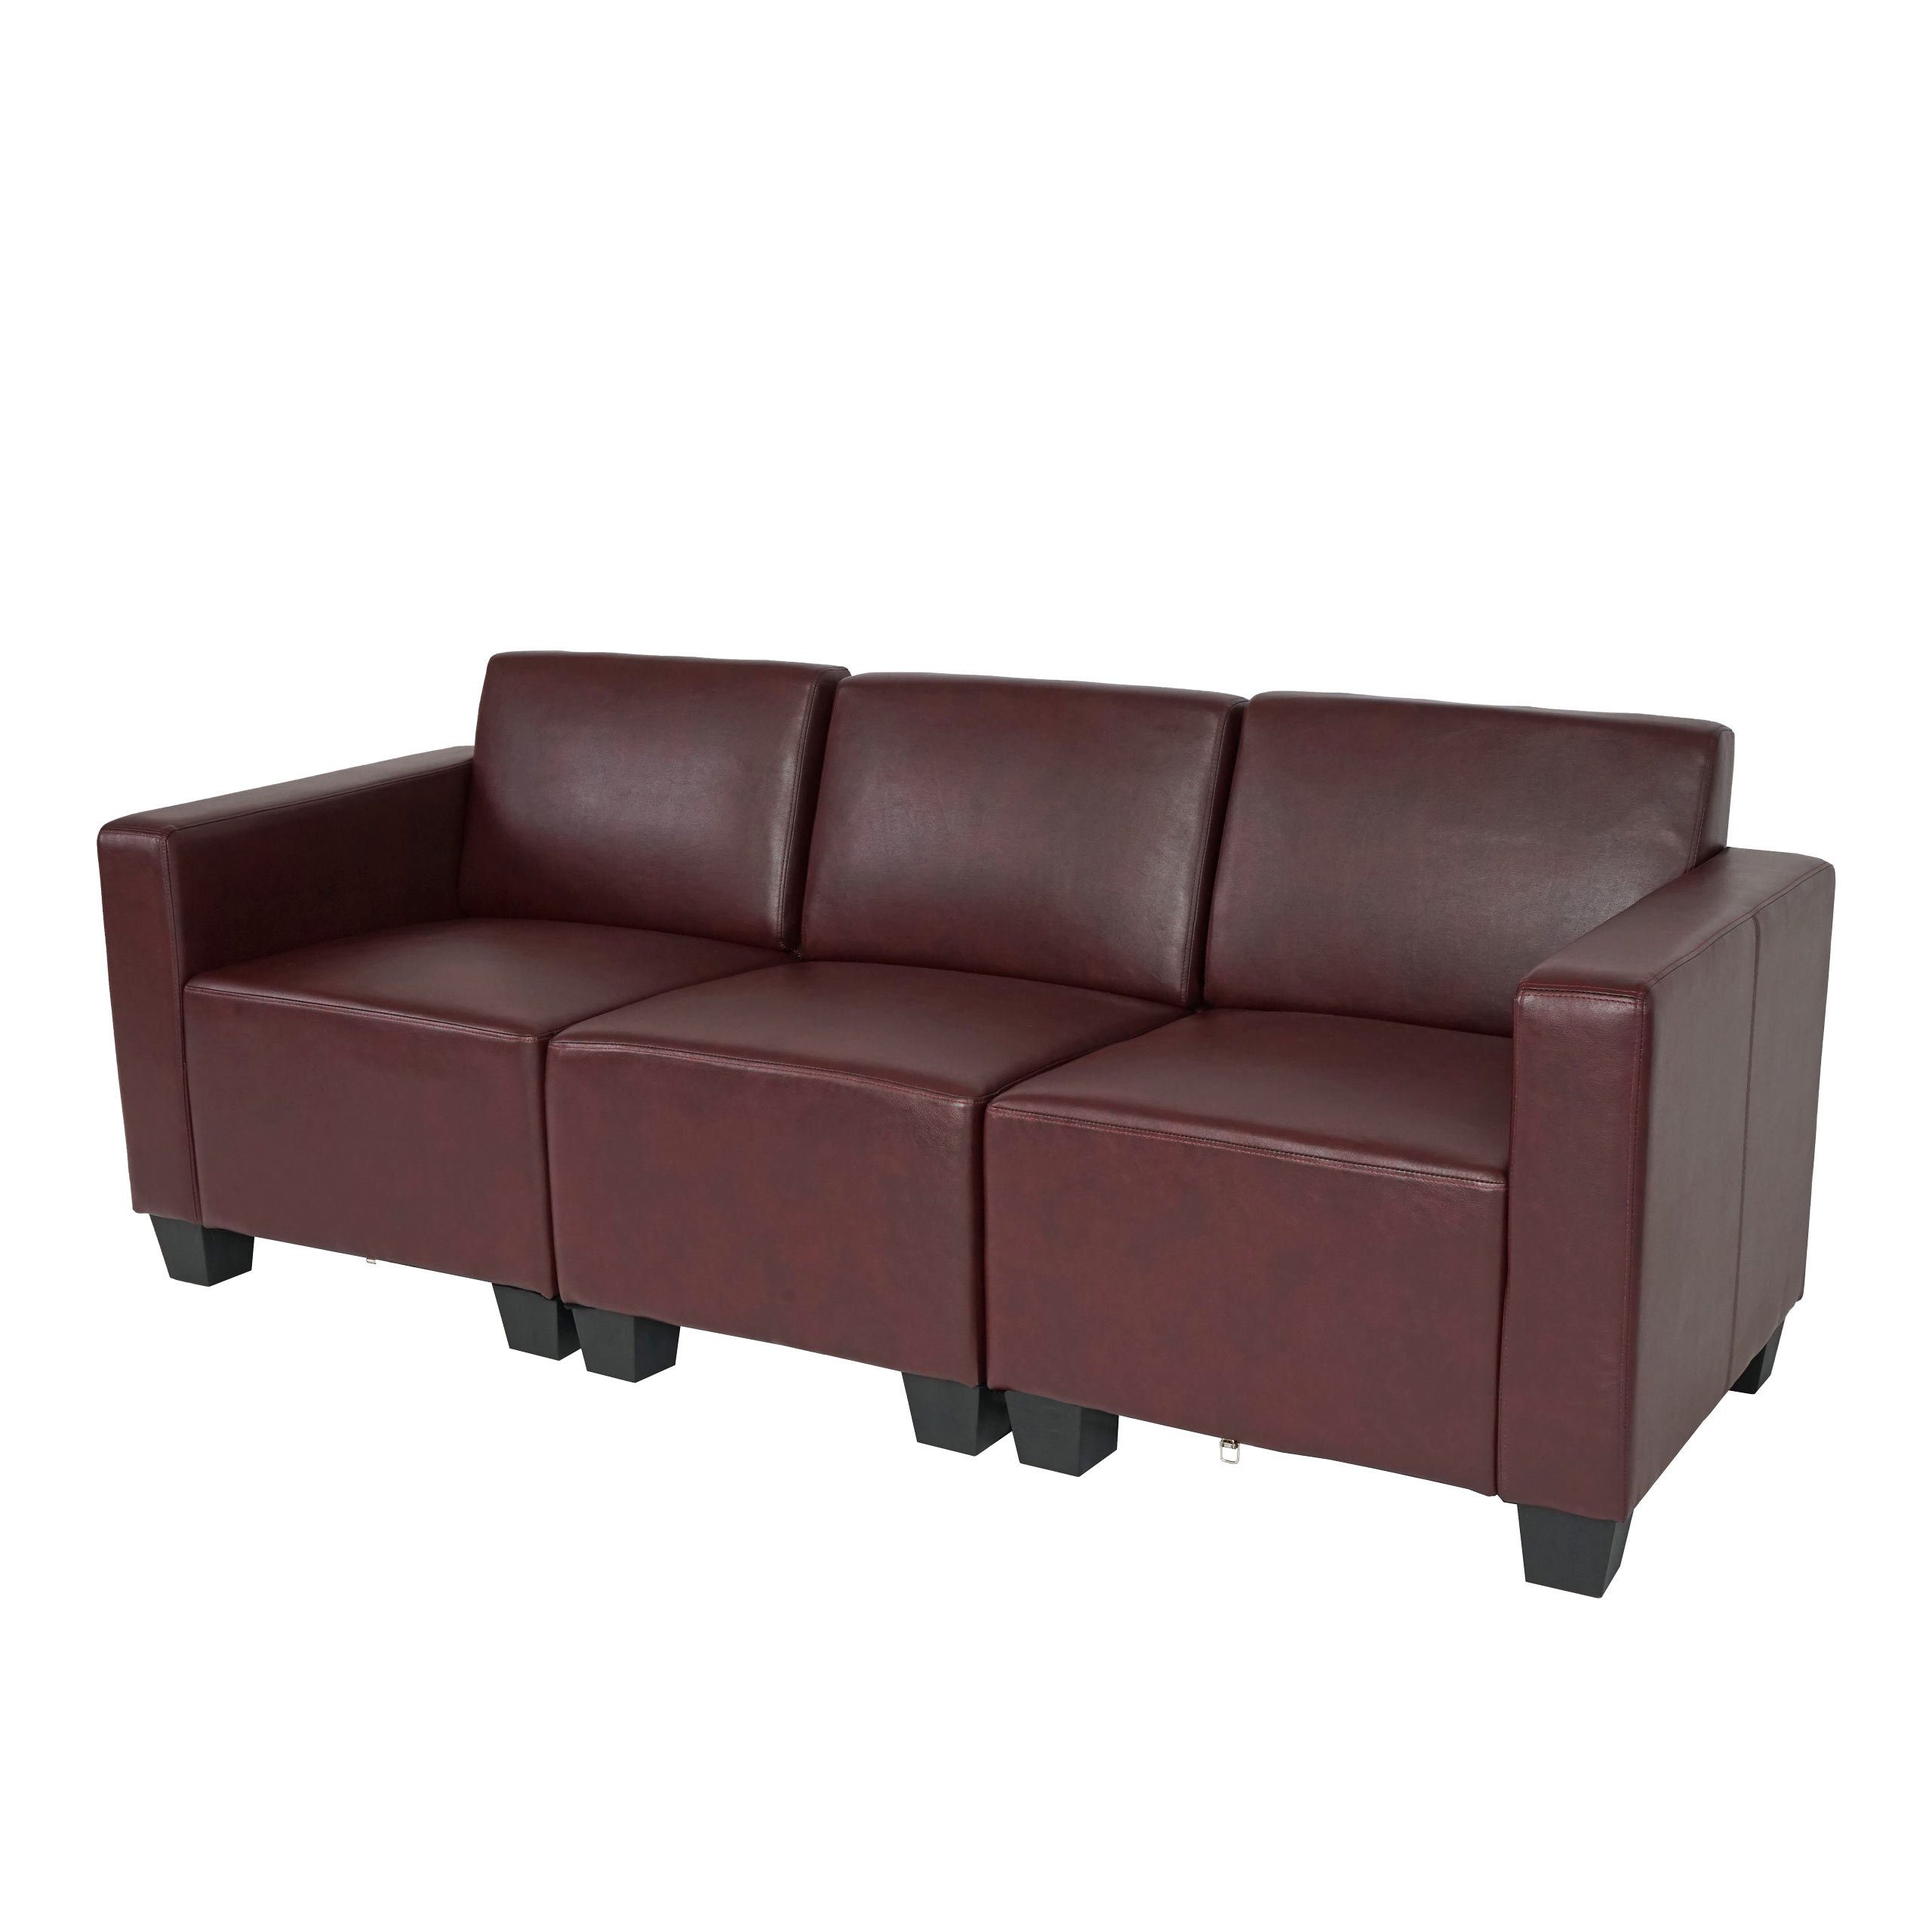 rot-braun bequeme | MCW Polsterung Set, Lounge-Stil, hochwertige Verarbeitung, Moncalieri-3, moderner rot-braun Sofa